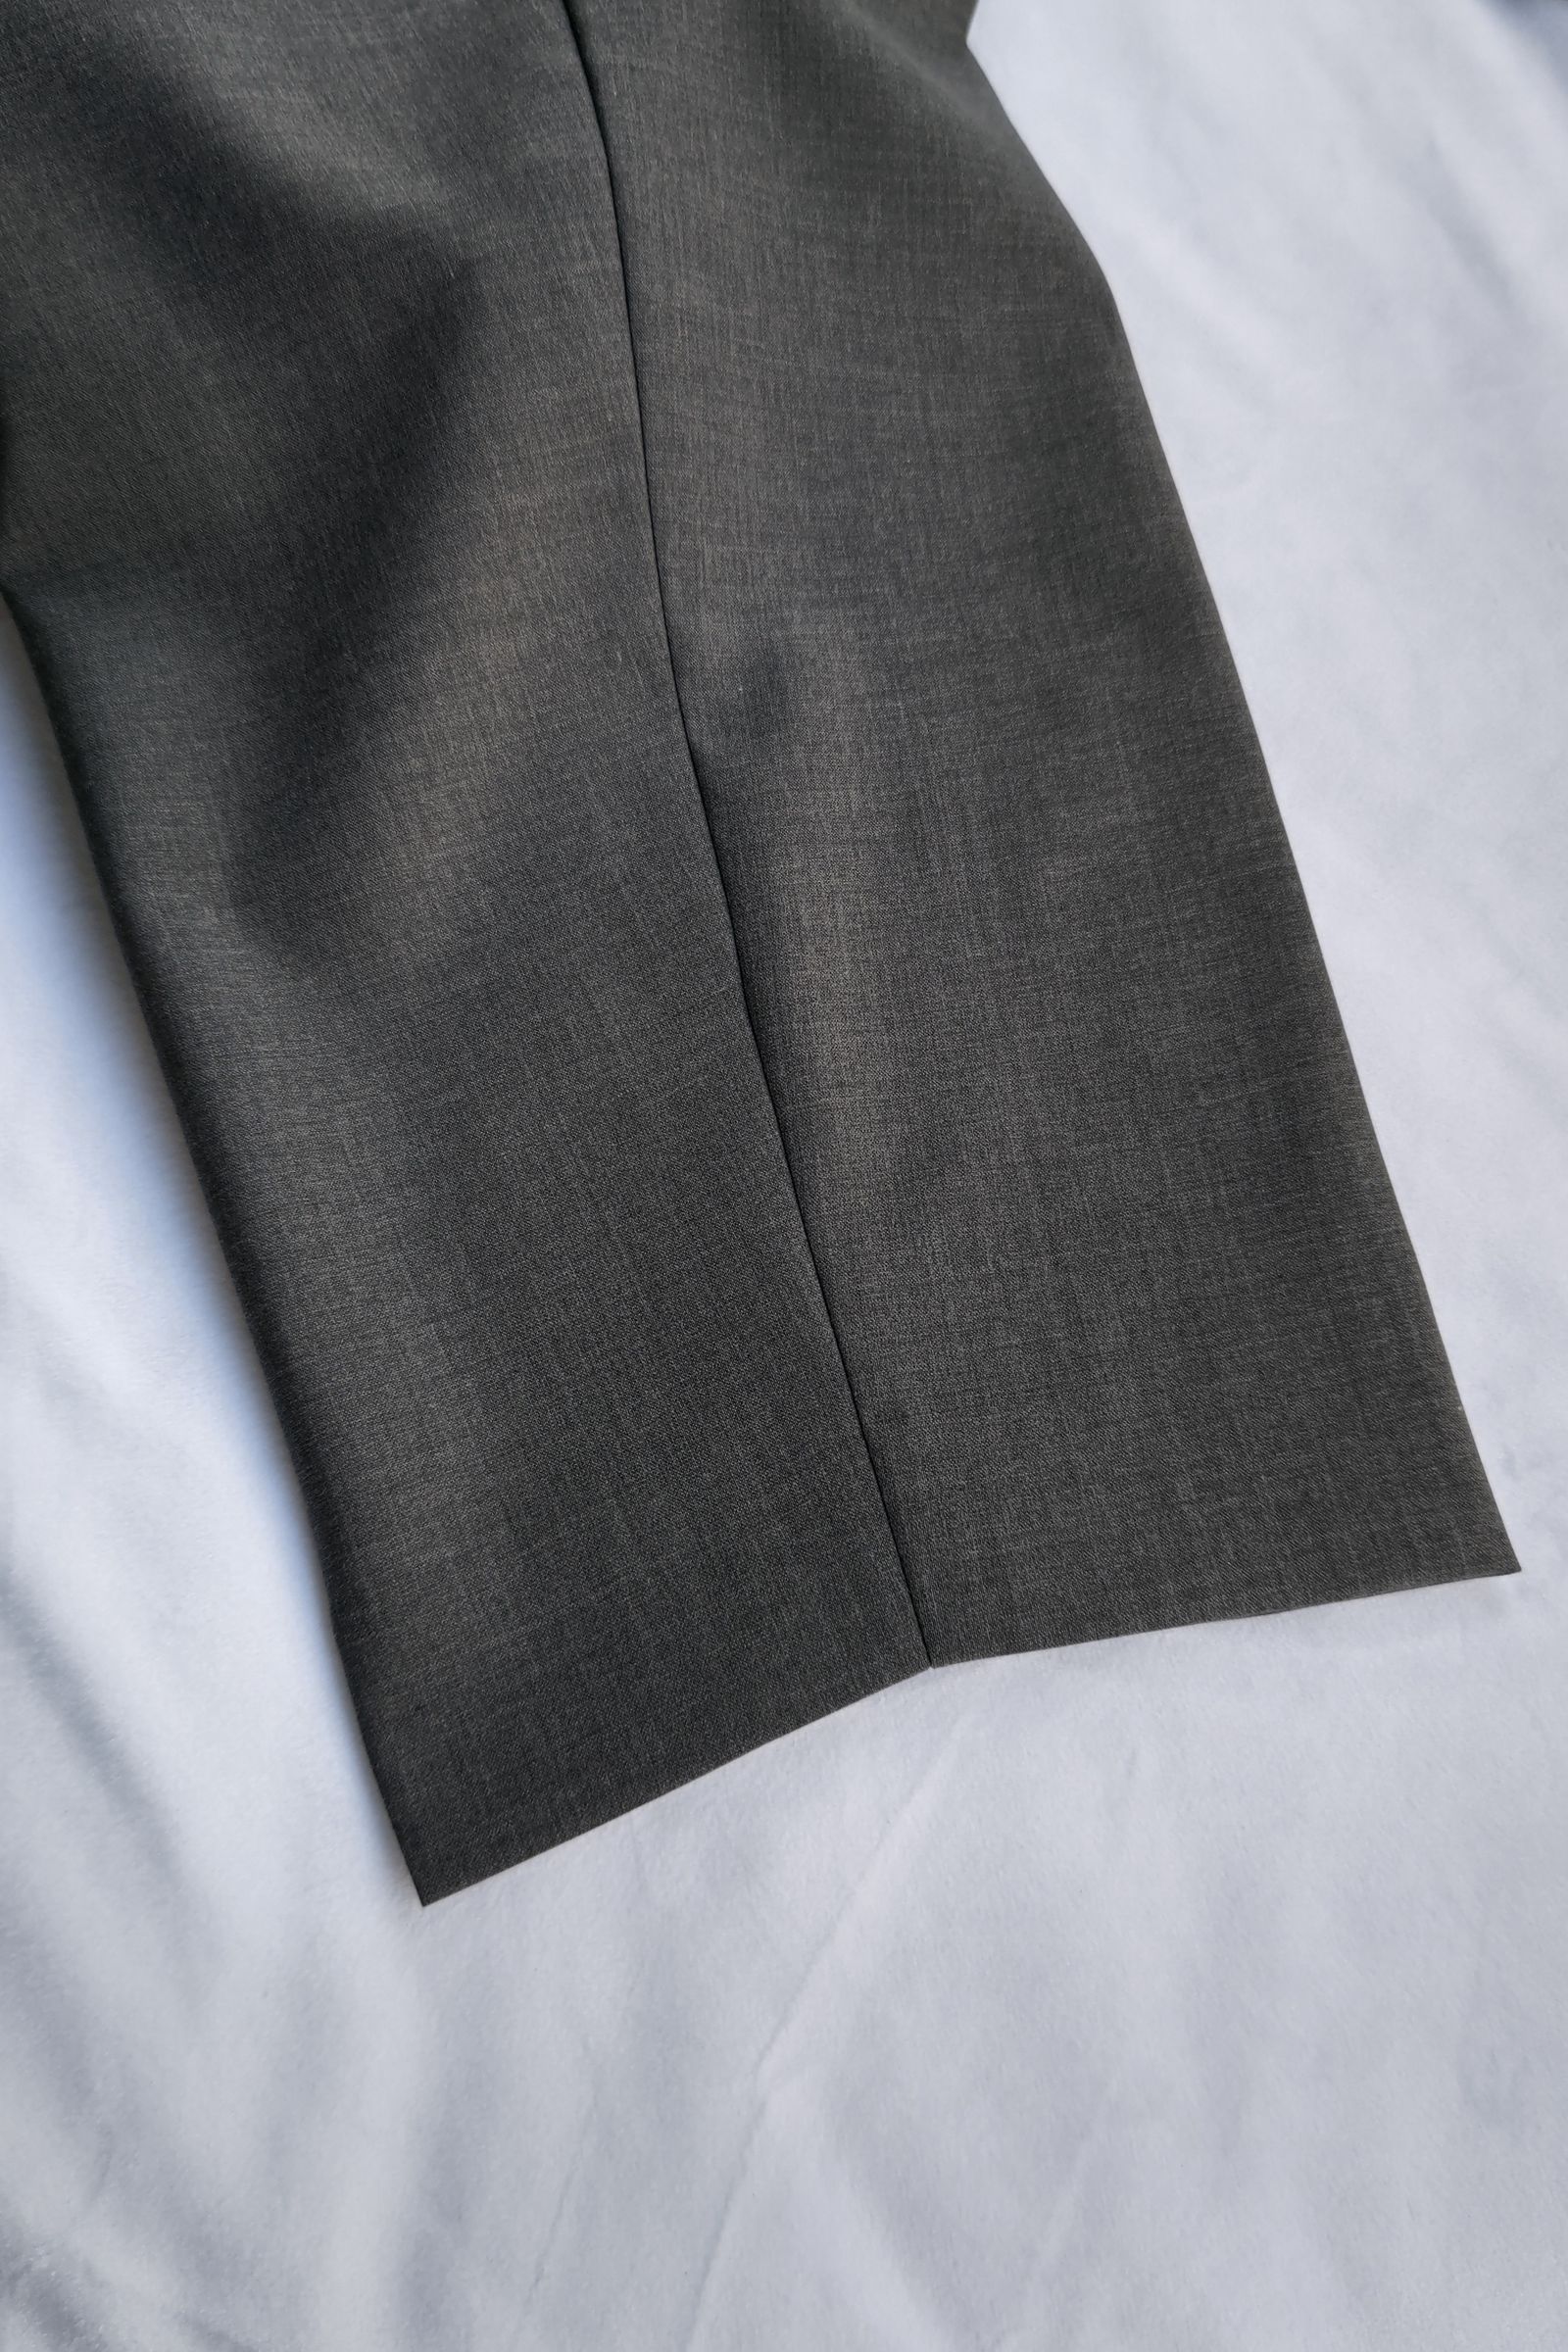 kontor - 3 pleat wool pants -dark gray- 23ss | asterisk